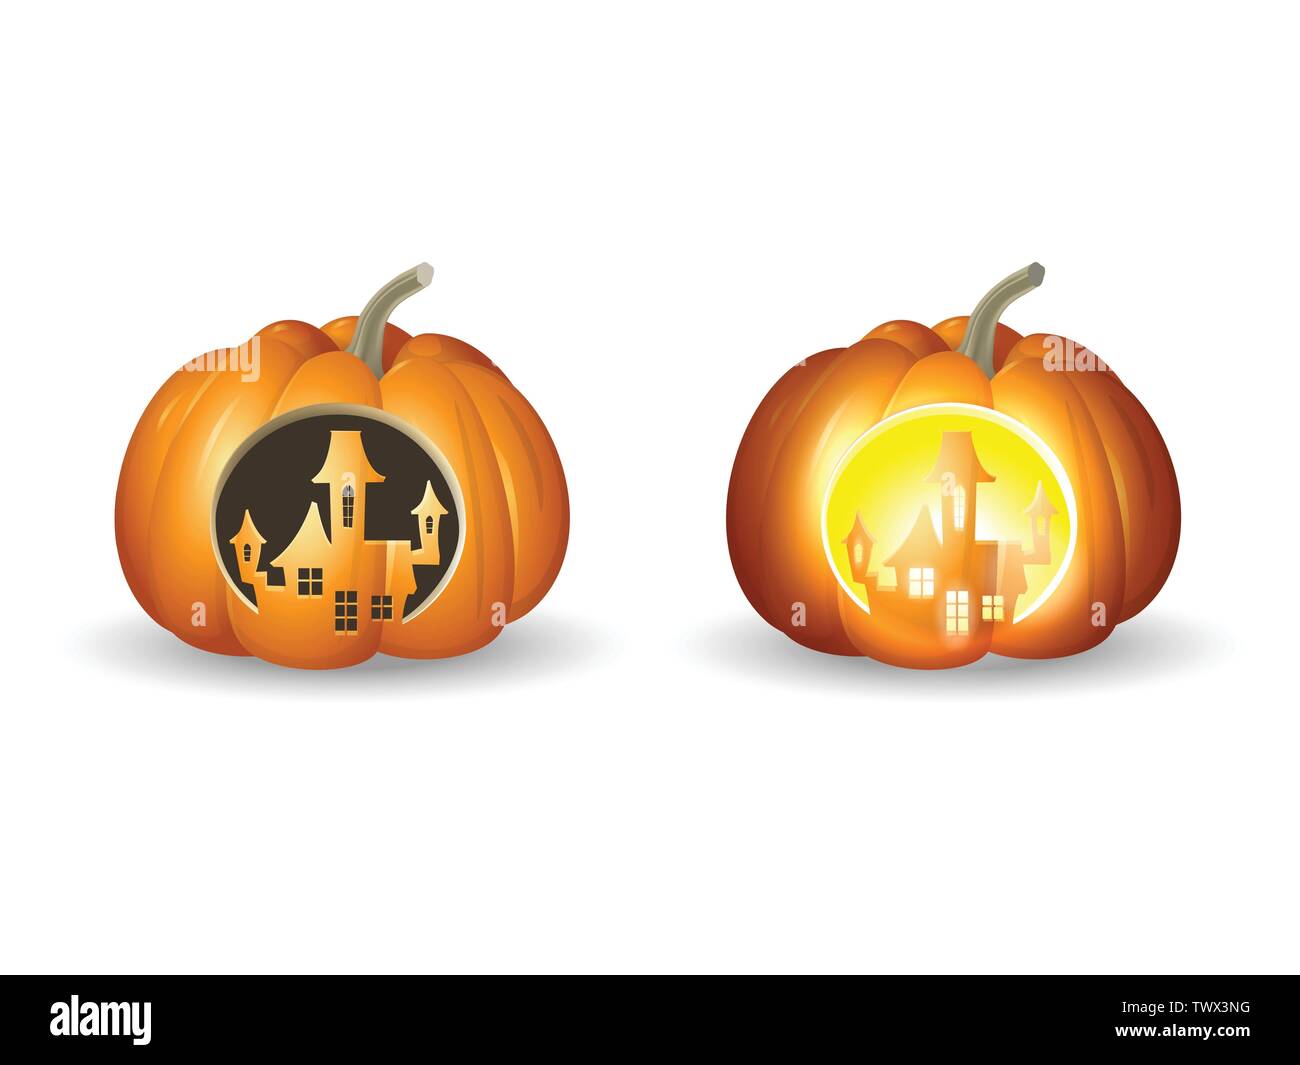 Zucche di Halloween Jack o lantern - castello scolpito forma con e senza luci - illustrazione di vettore isolato su sfondo bianco Illustrazione Vettoriale